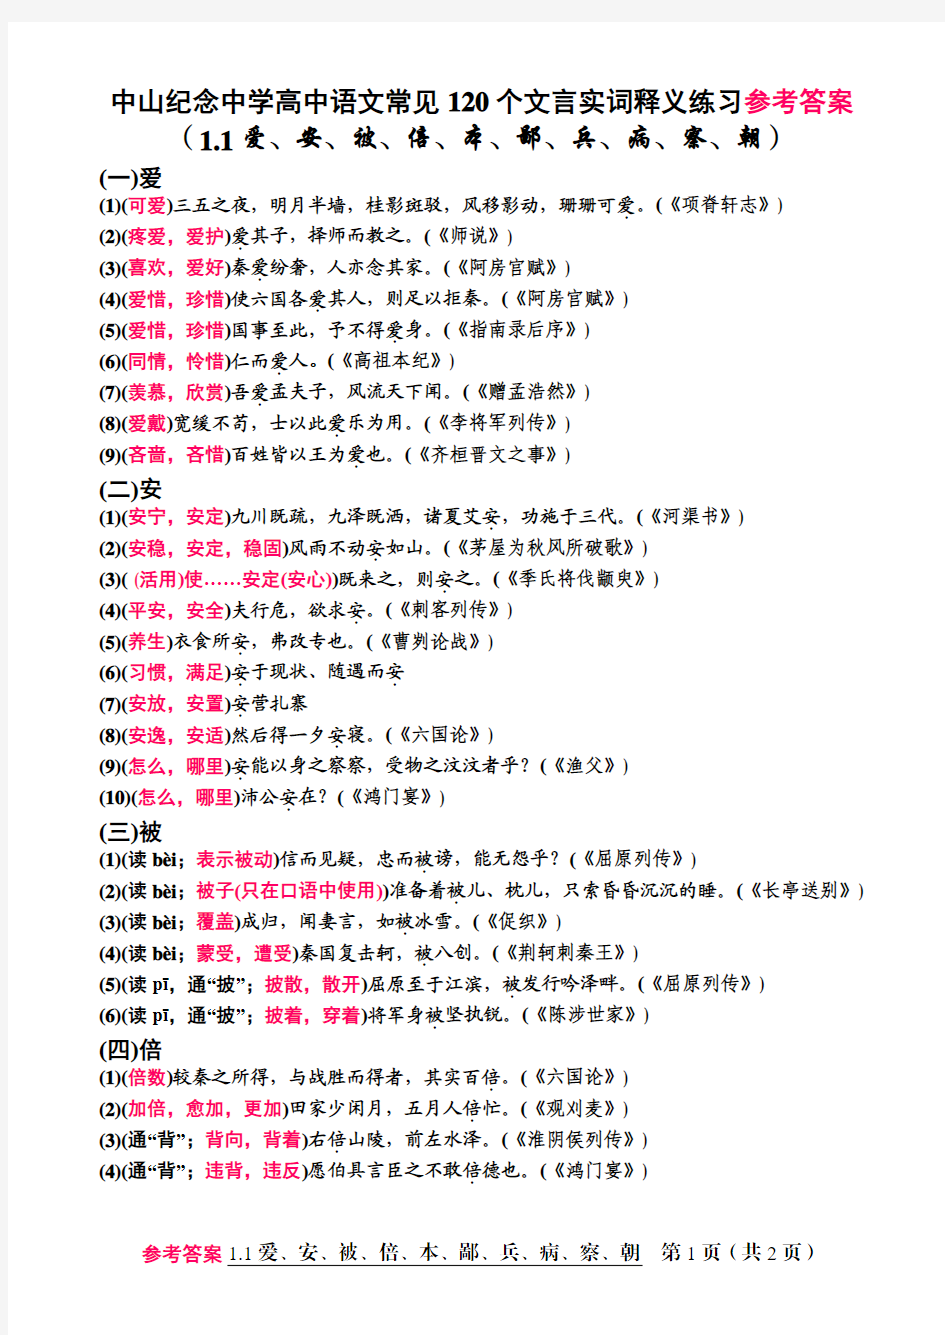 纪中语文120个文言实词释义参考答案(1.1爱、安、被、倍、本、鄙、兵、病、察、朝)